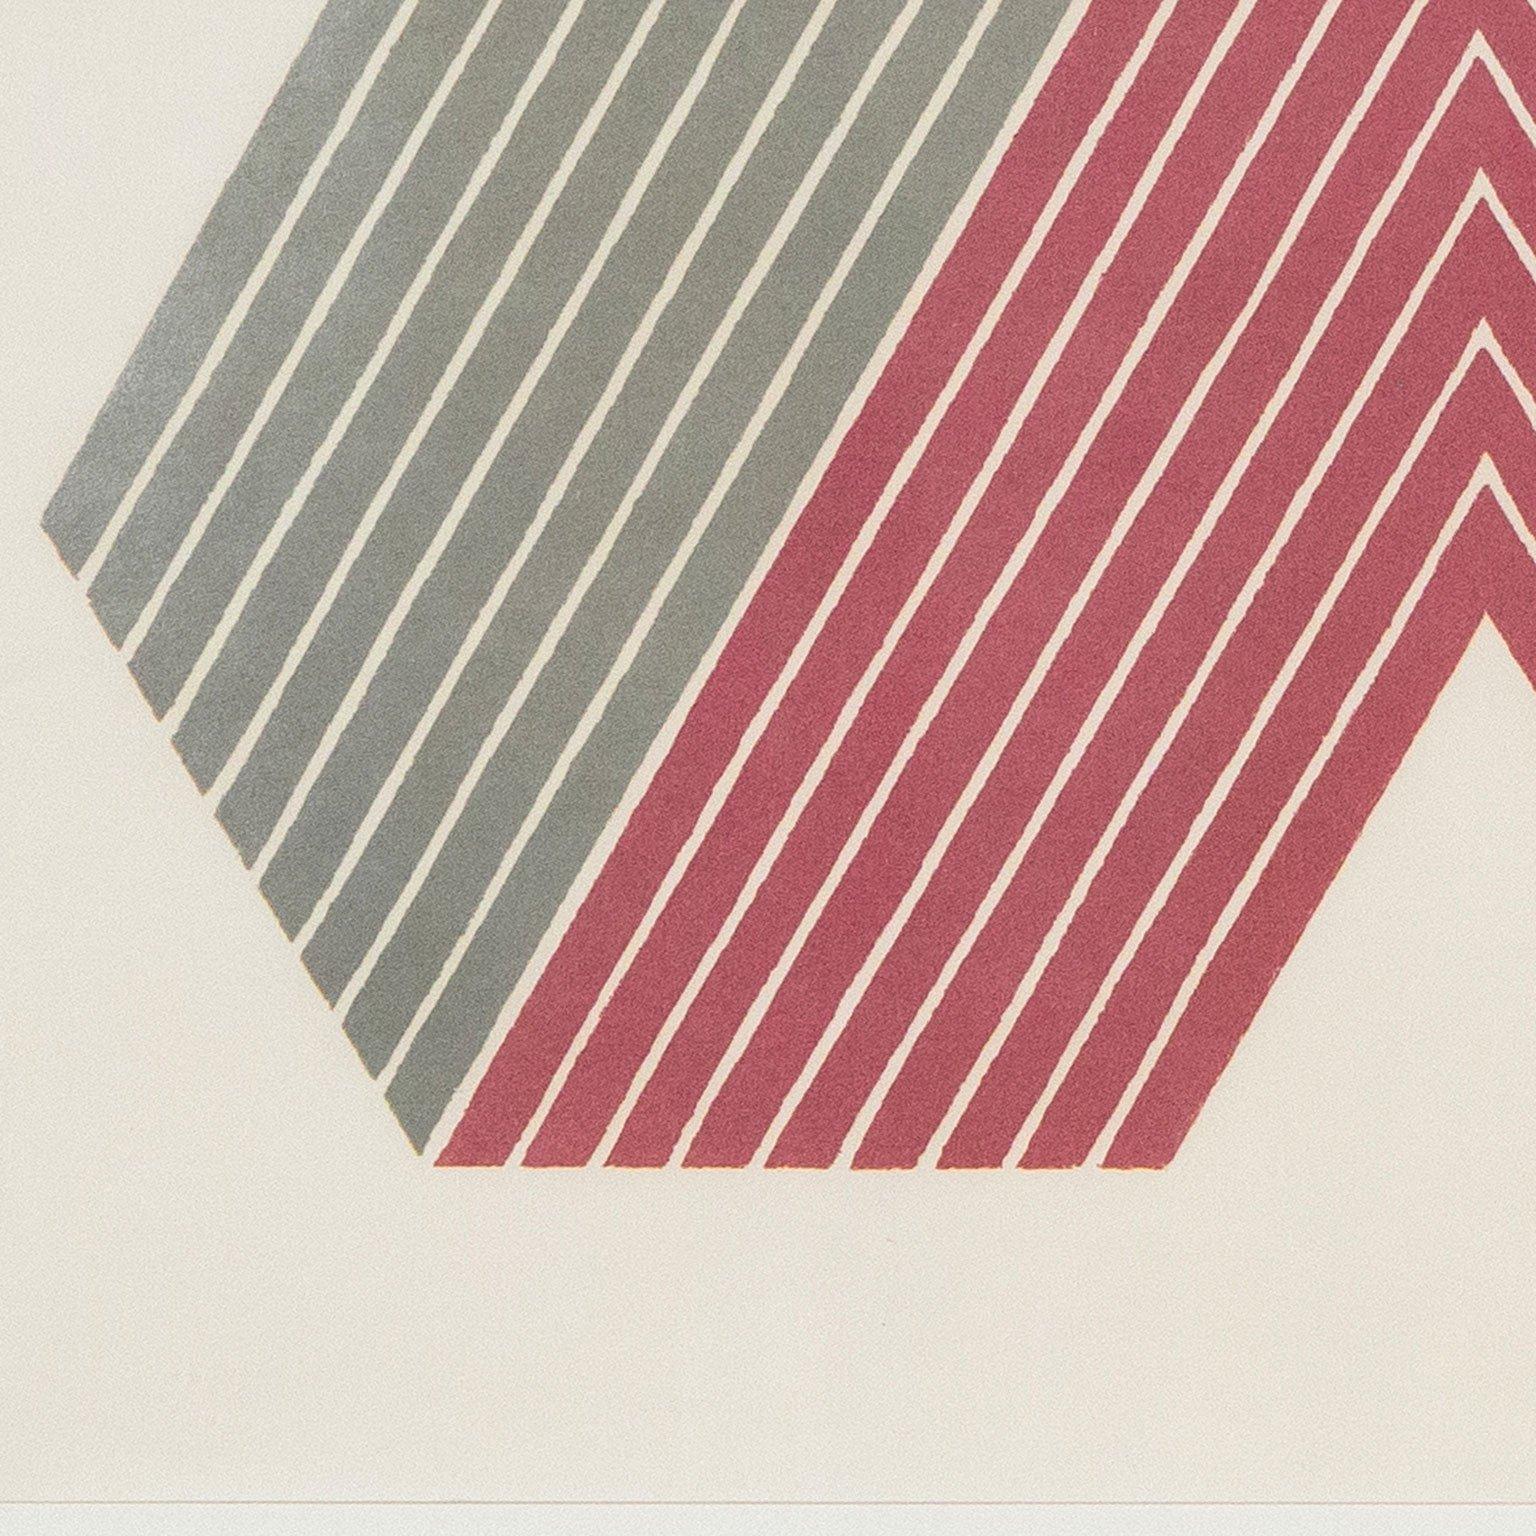 Frank Stella began printmaking in 1967.  